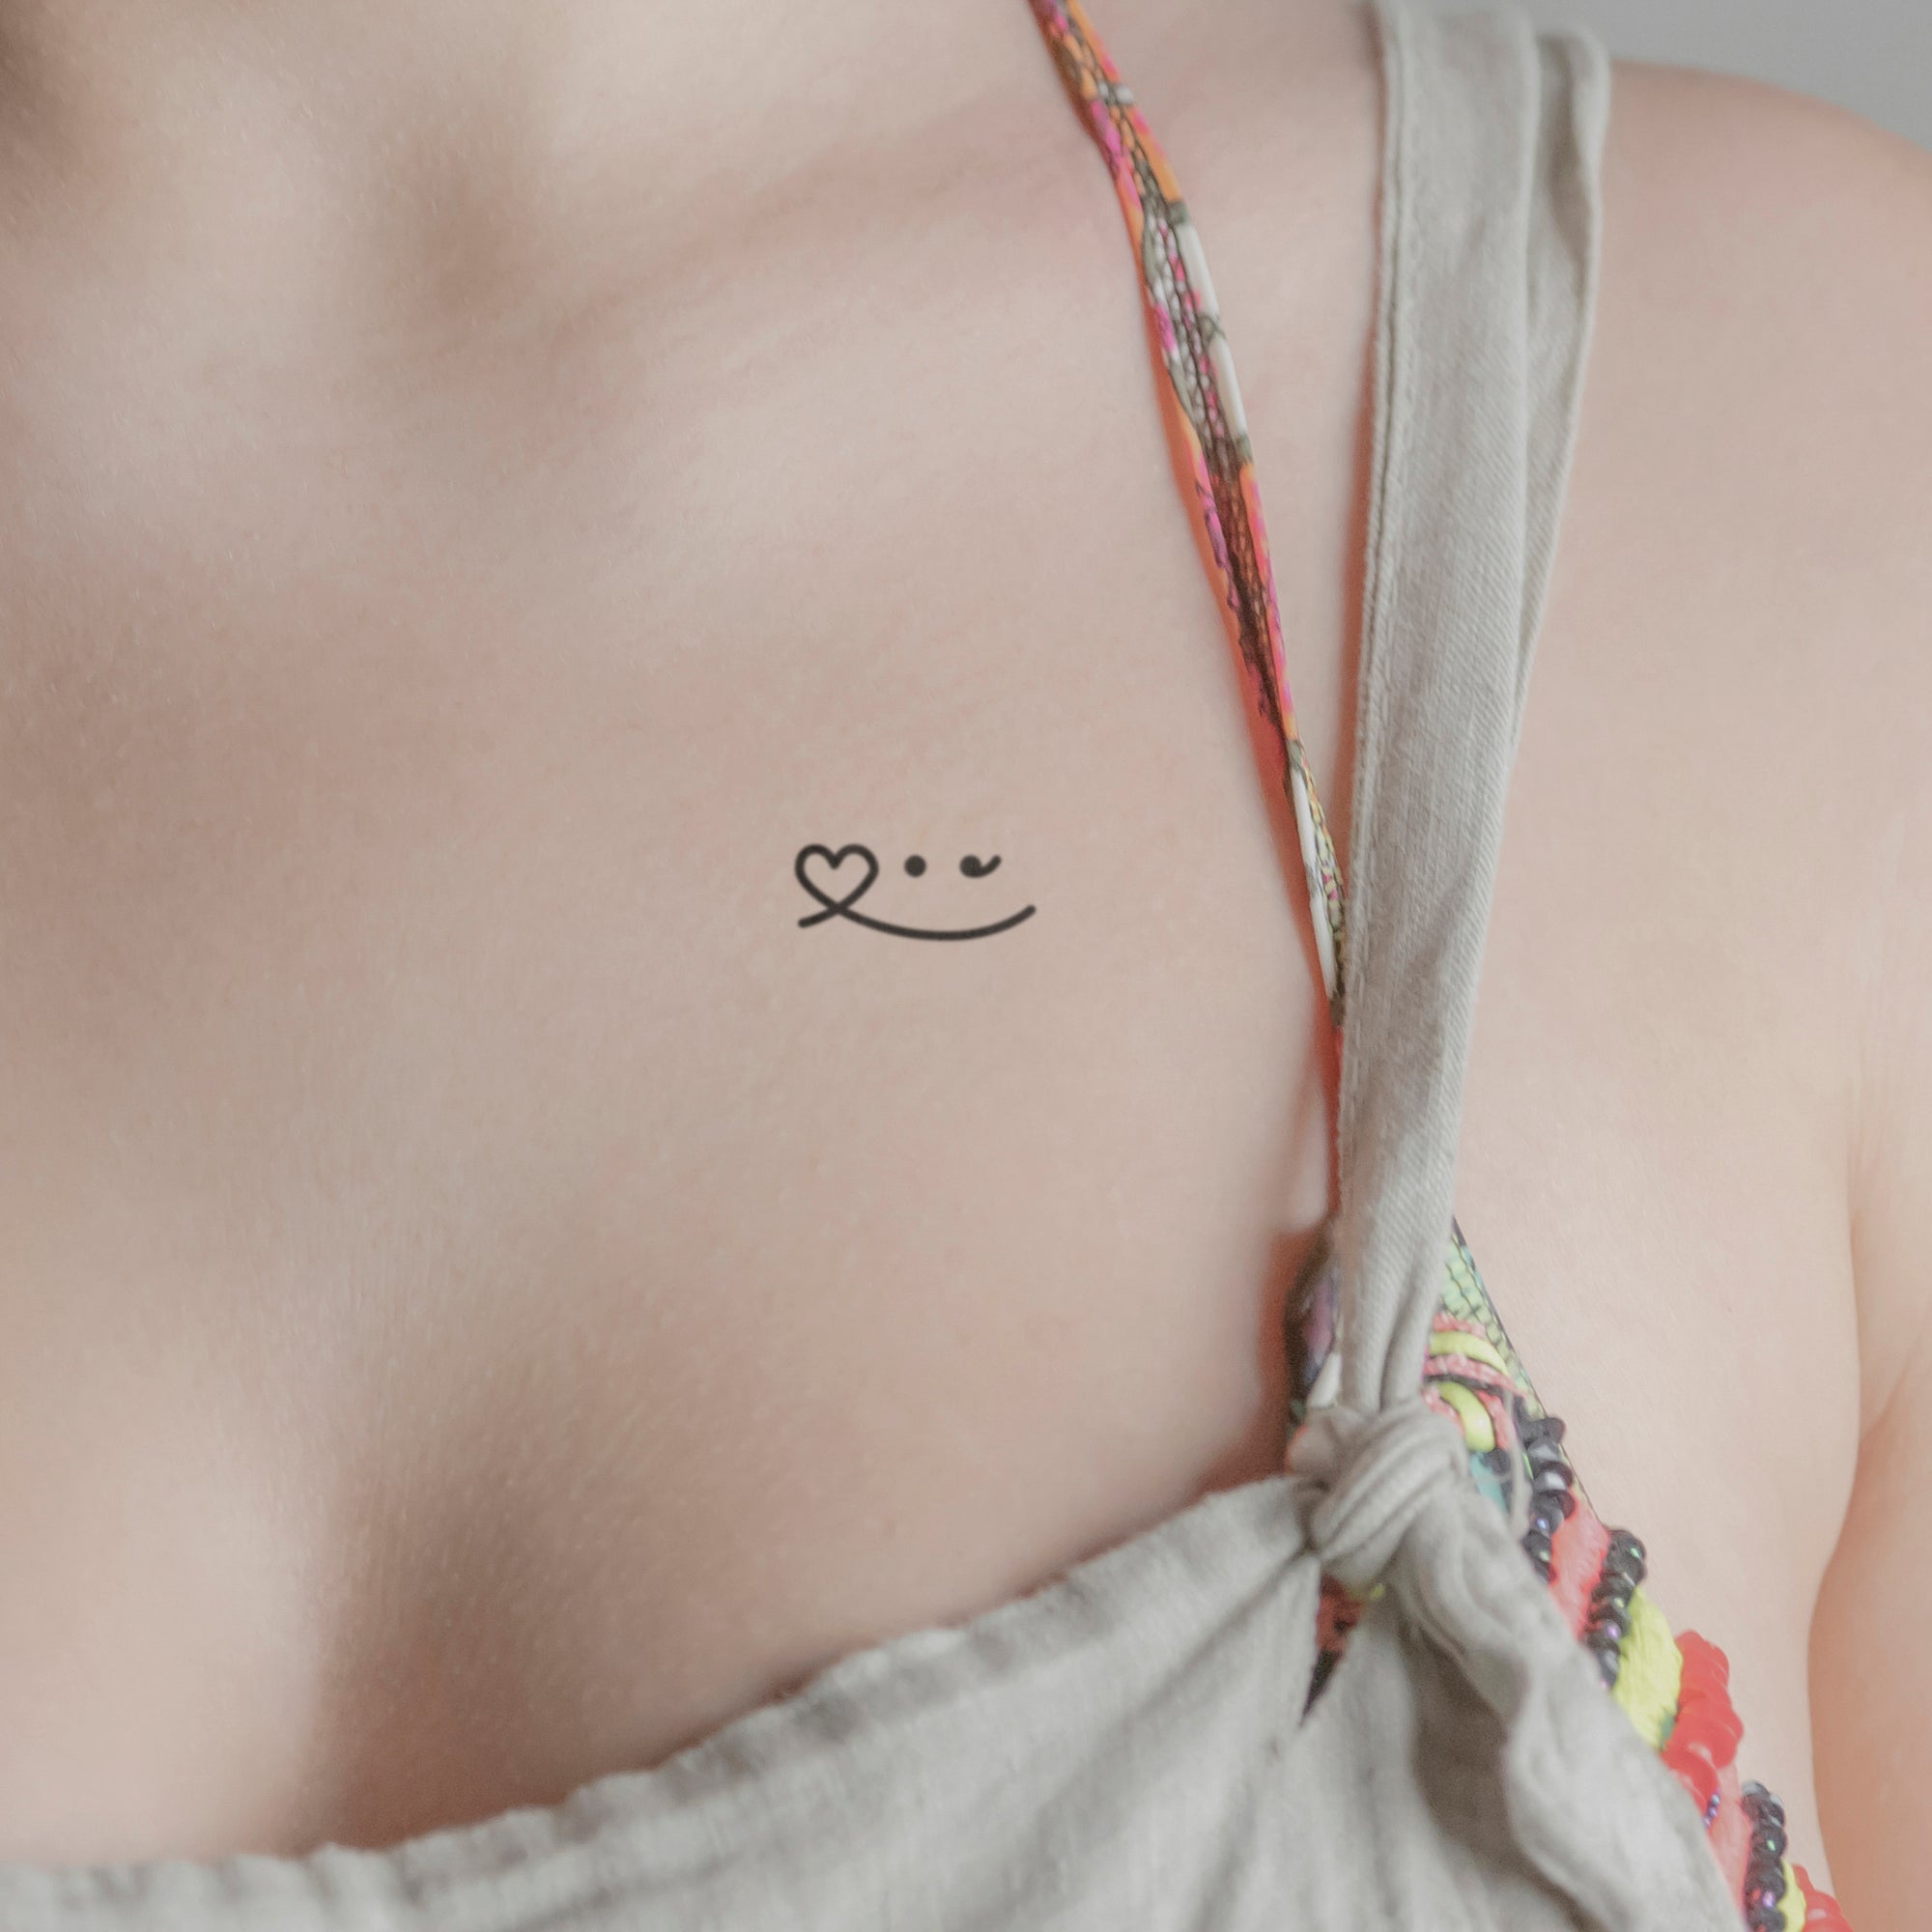 XOXO Emoji Matching Temporary Tattoos – The Inkgenic